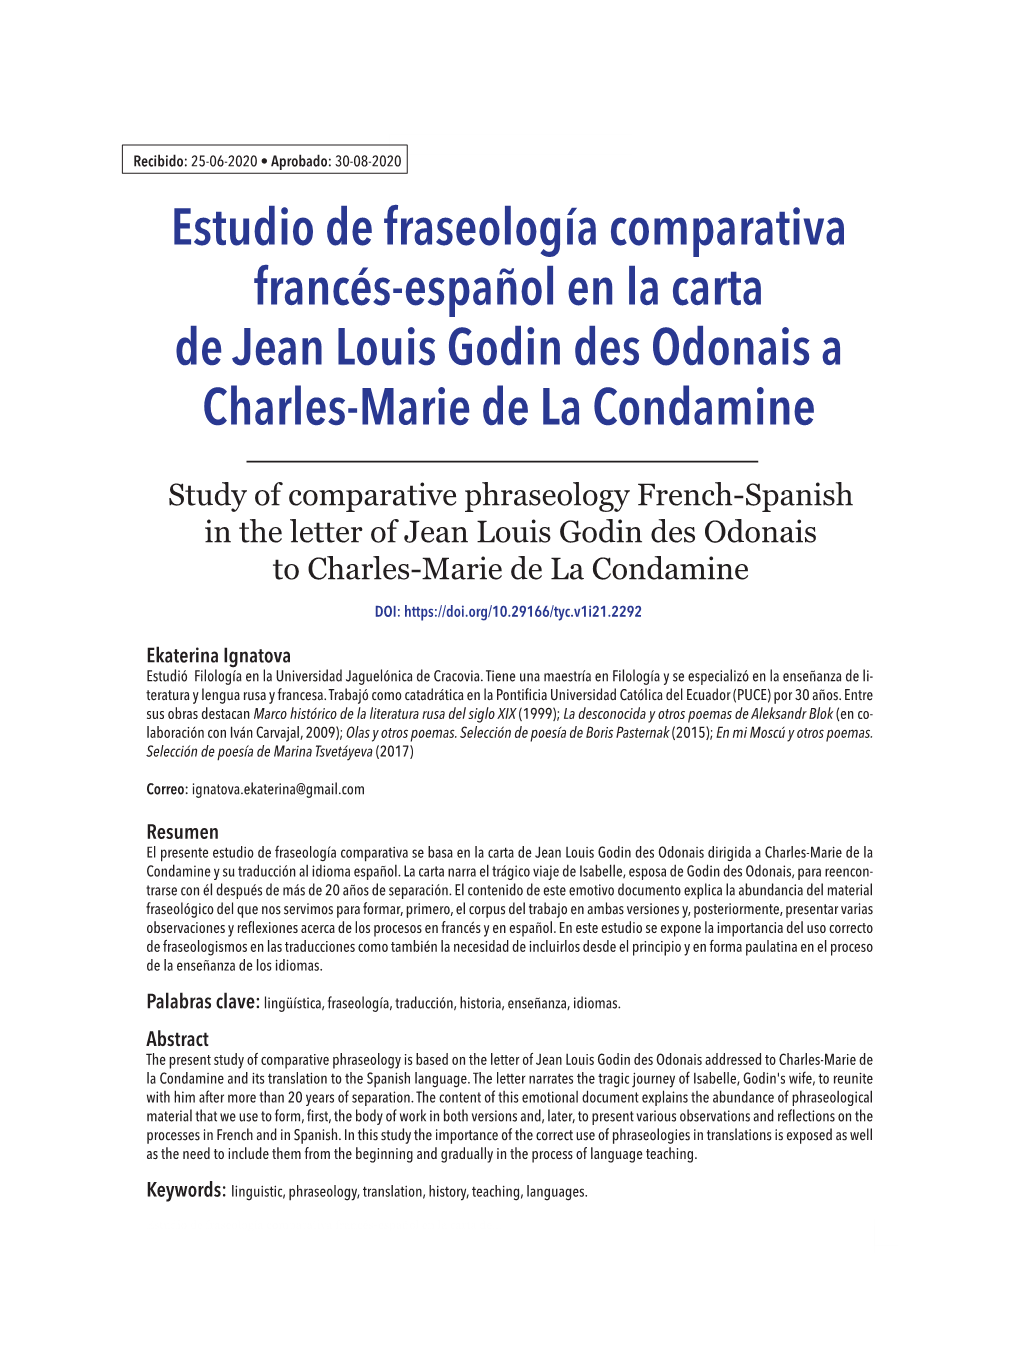 Estudio De Fraseología Comparativa Francés-Español En La Carta De Jean Louis Godin Des Odonais a Charles-Marie De La Condamine